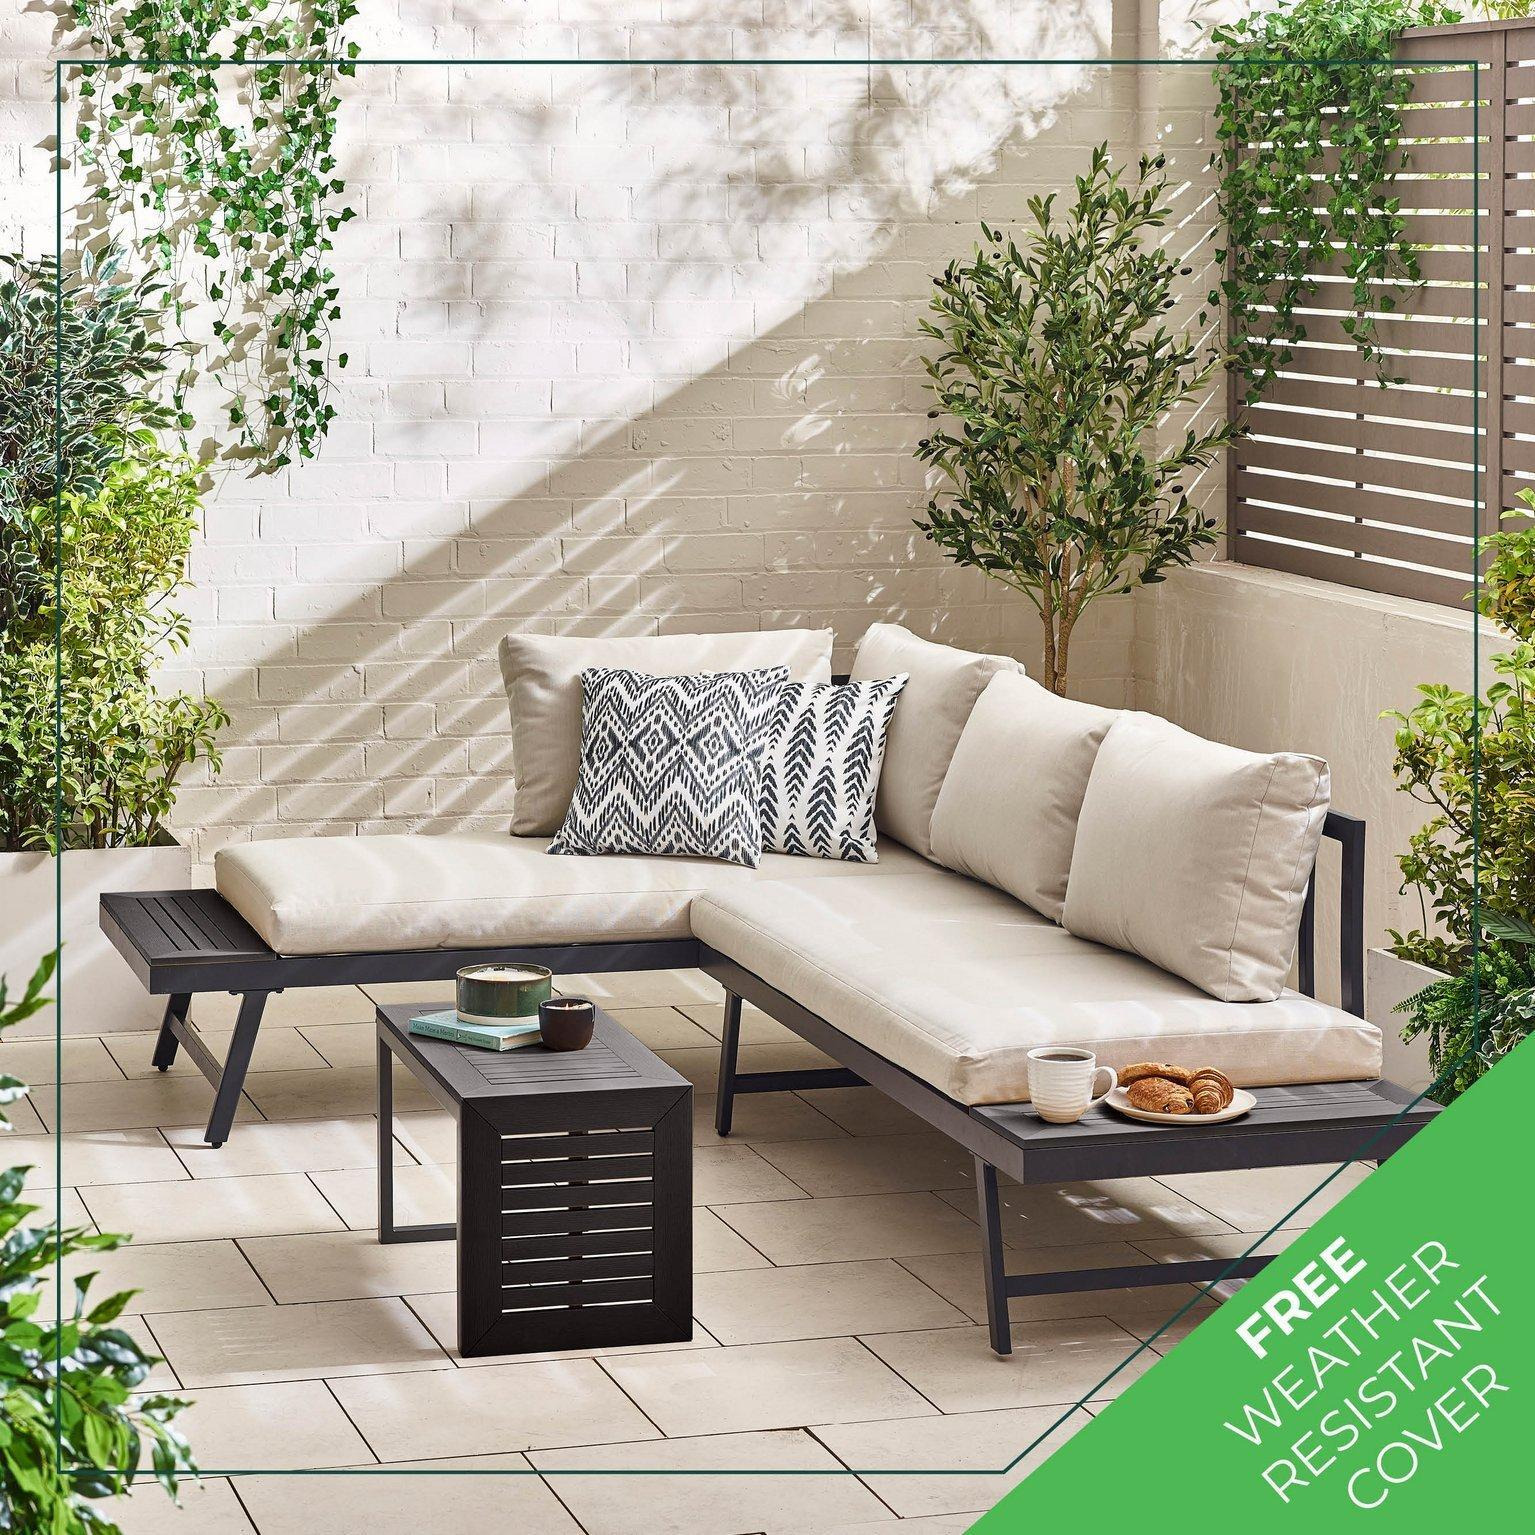 Outdoor Garden Furniture - Riviera 2 Person Modular Chaise Garden Sofa Sun Lounger - image 1